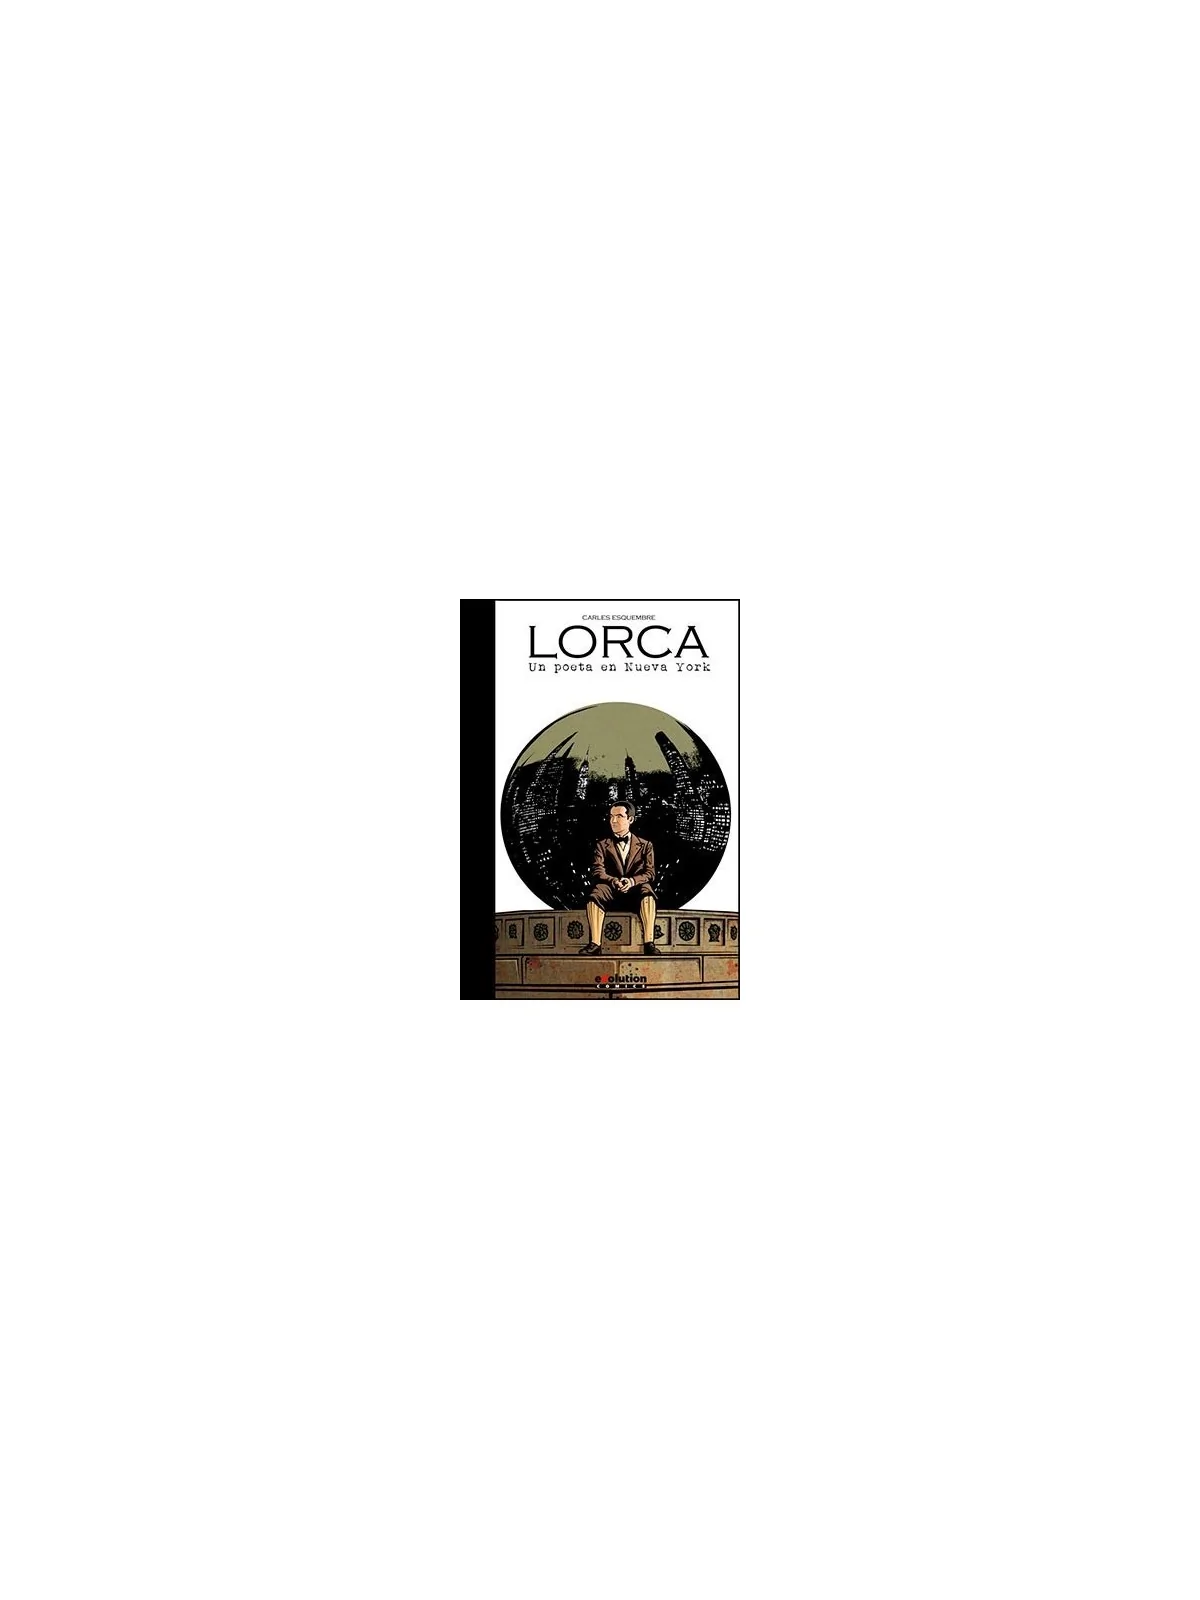 Comprar Lorca: Un Poeta en Nueva York barato al mejor precio 17,10 € d